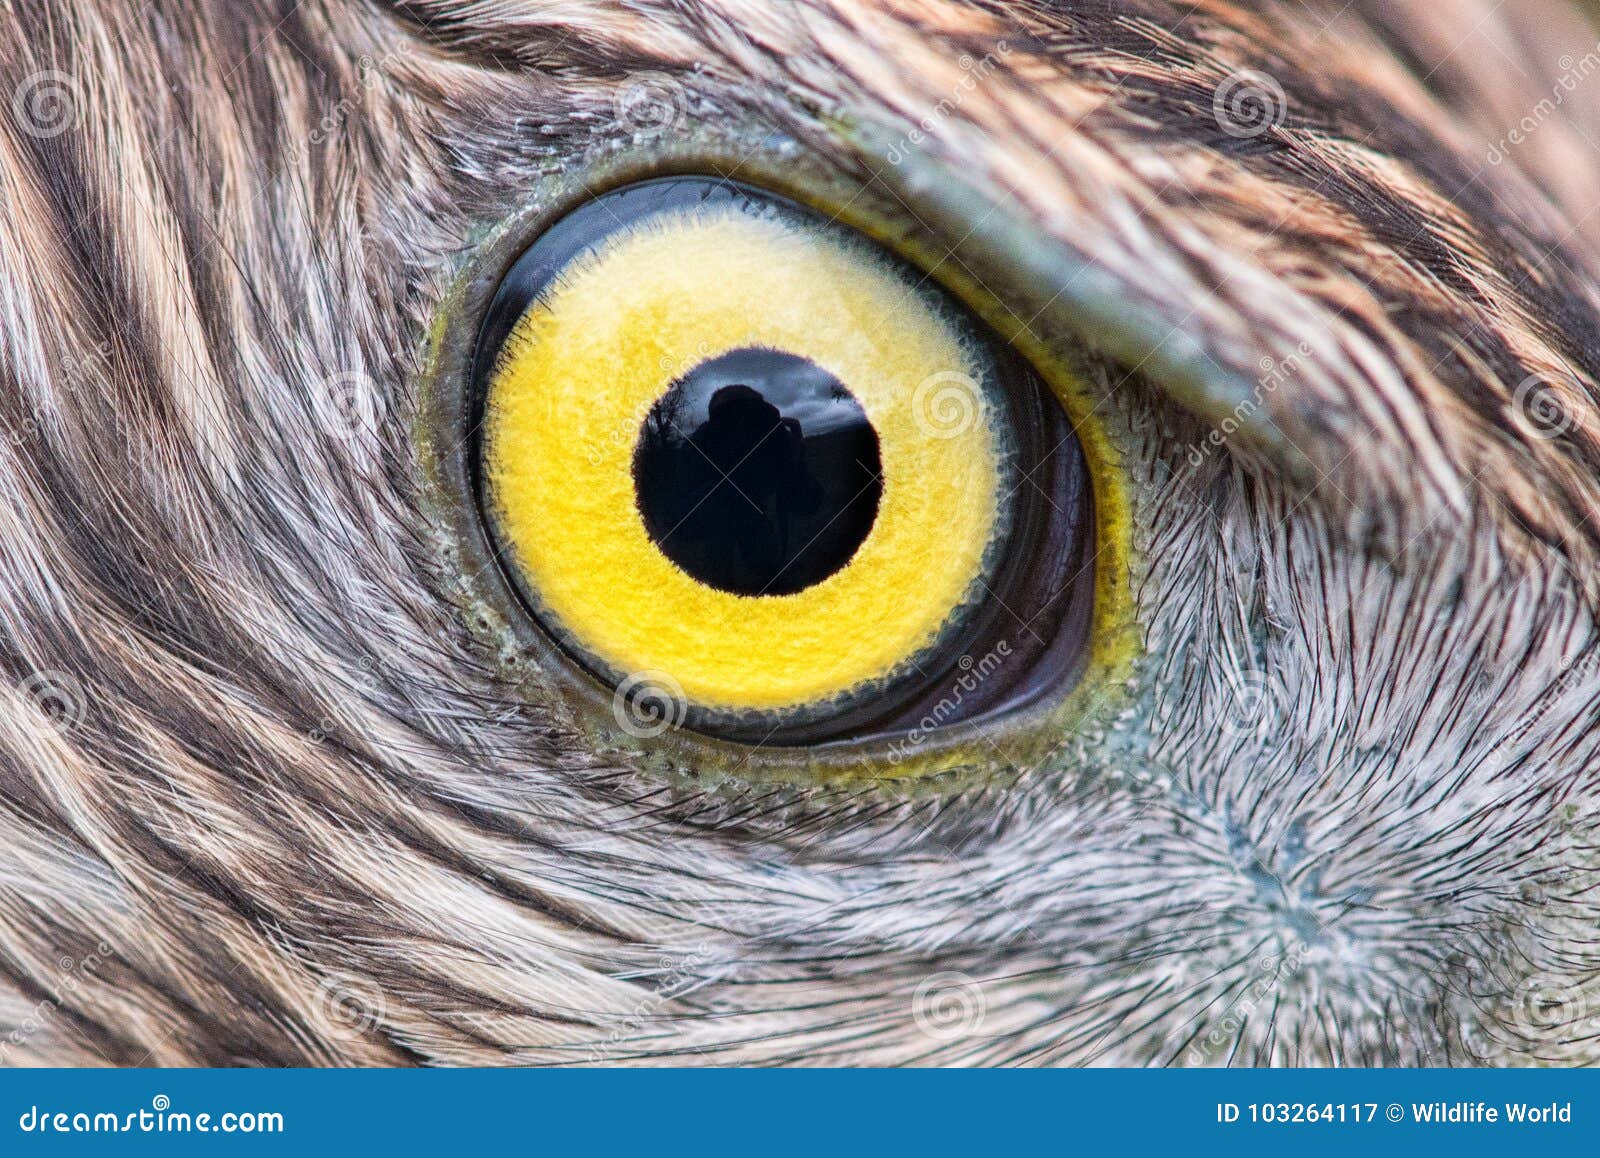 Eagle Eye Close-up, Macro Photo, Eye of the Goshawk Stock Image - Image of  head, wildlife: 103264117